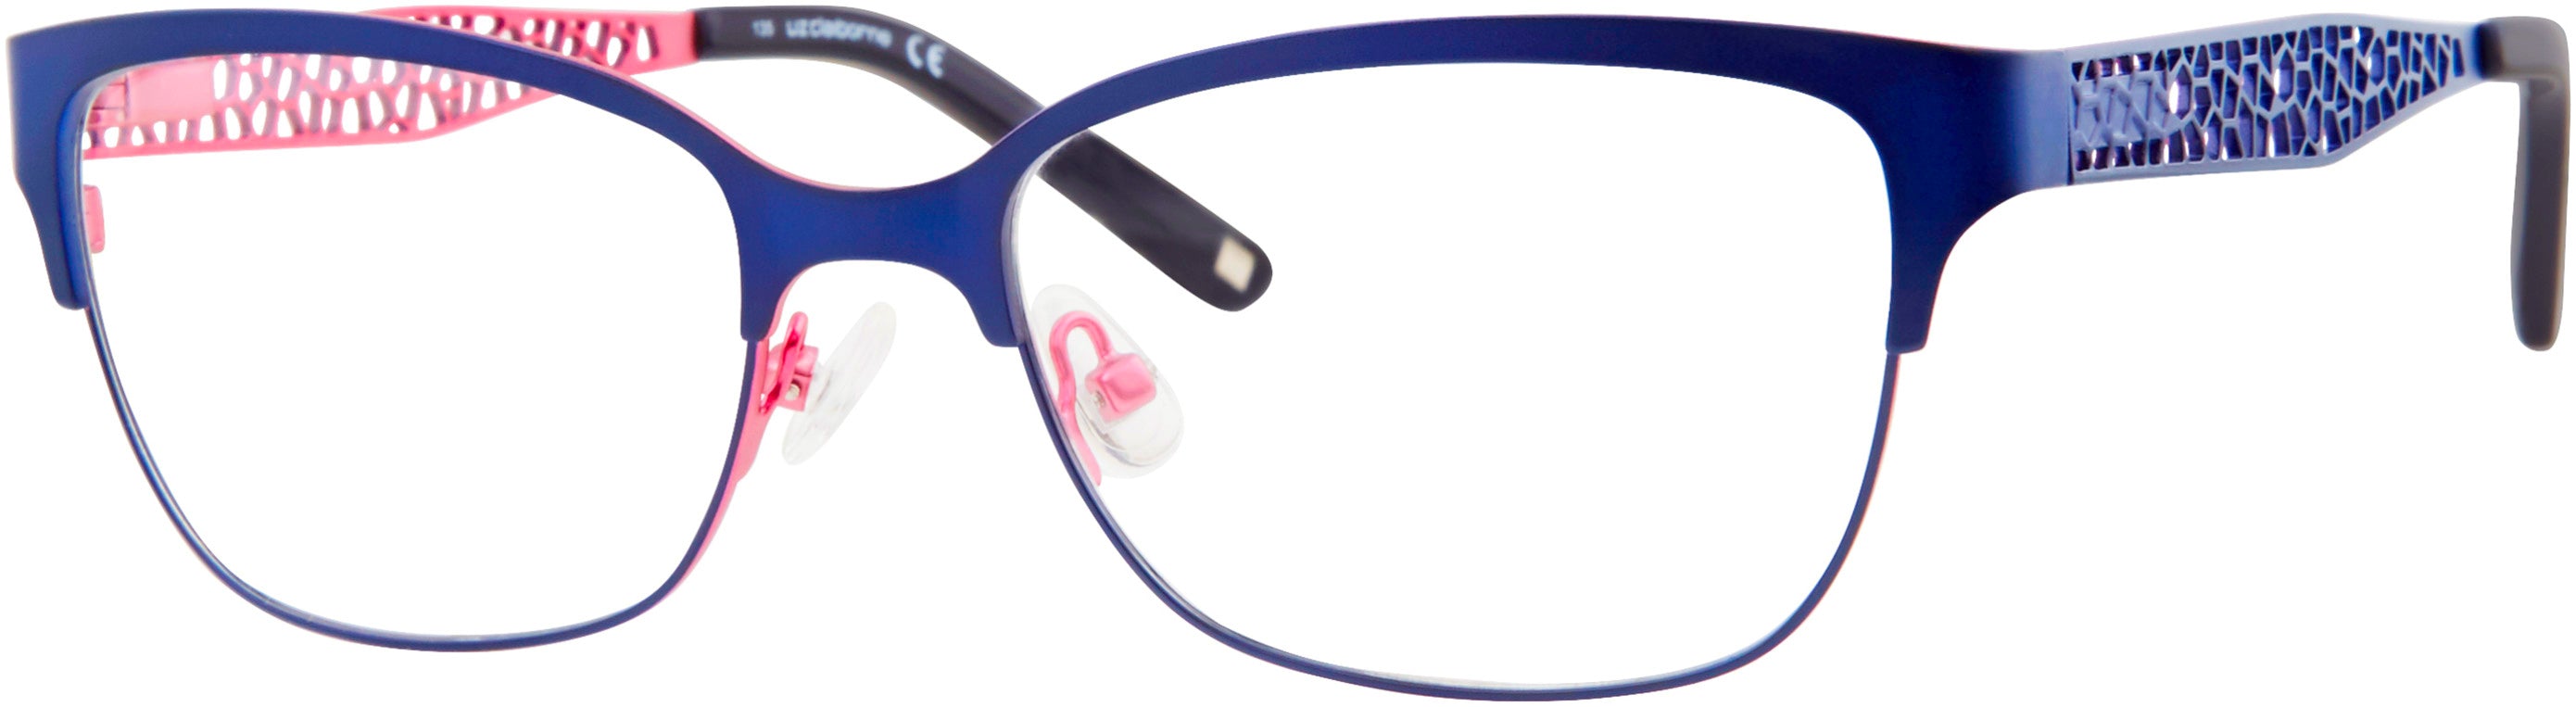  Liz Claiborne 643 Square Eyeglasses 0BR0-0BR0  Blue Pink (00 Demo Lens)